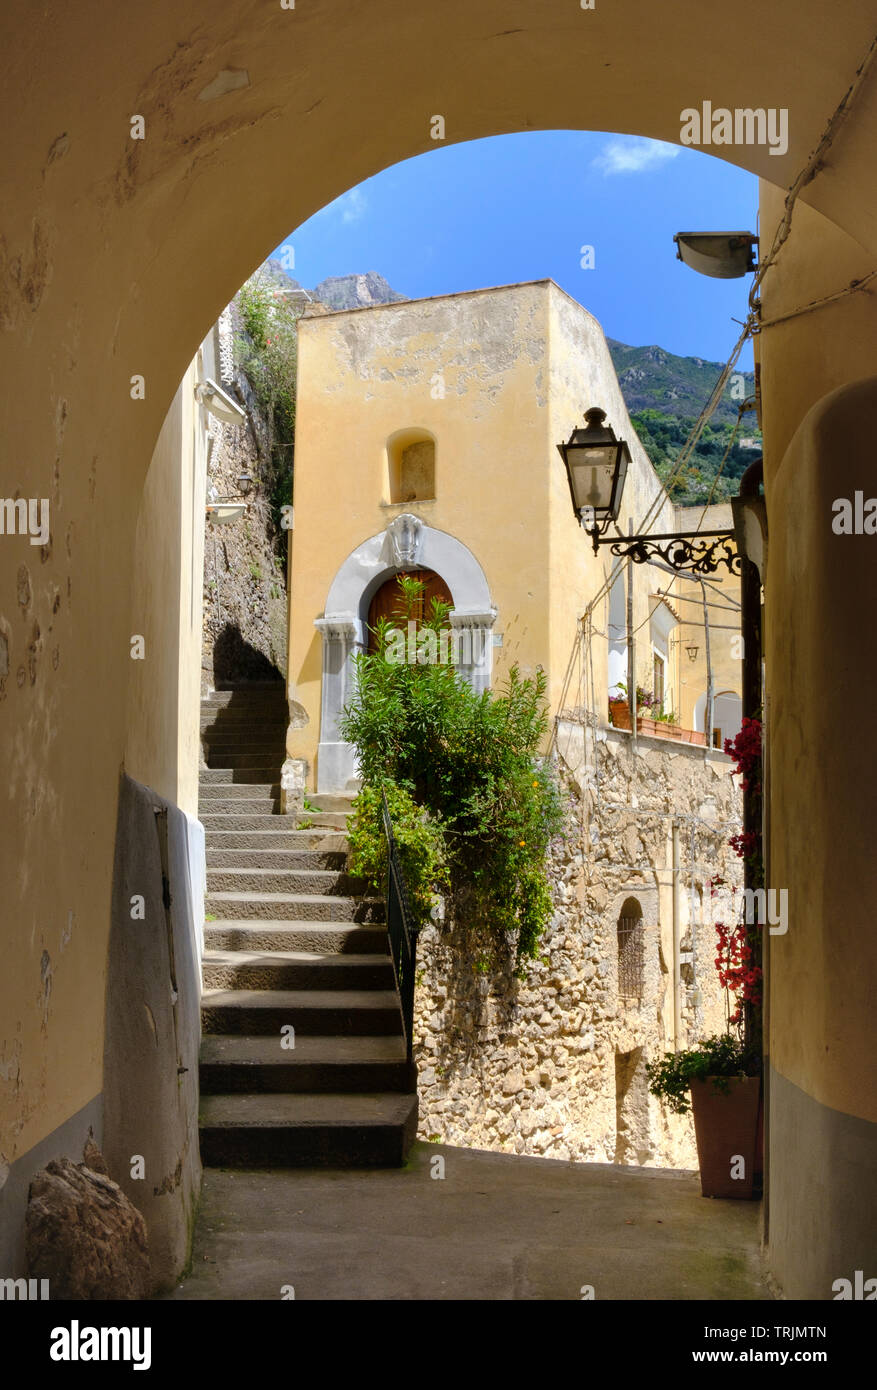 Traditionelle bunte Italienische Häuser steilen Treppen, Bögen und engen Gassen typisch von Positano an der Amalfiküste in Kampanien in Süditalien Stockfoto